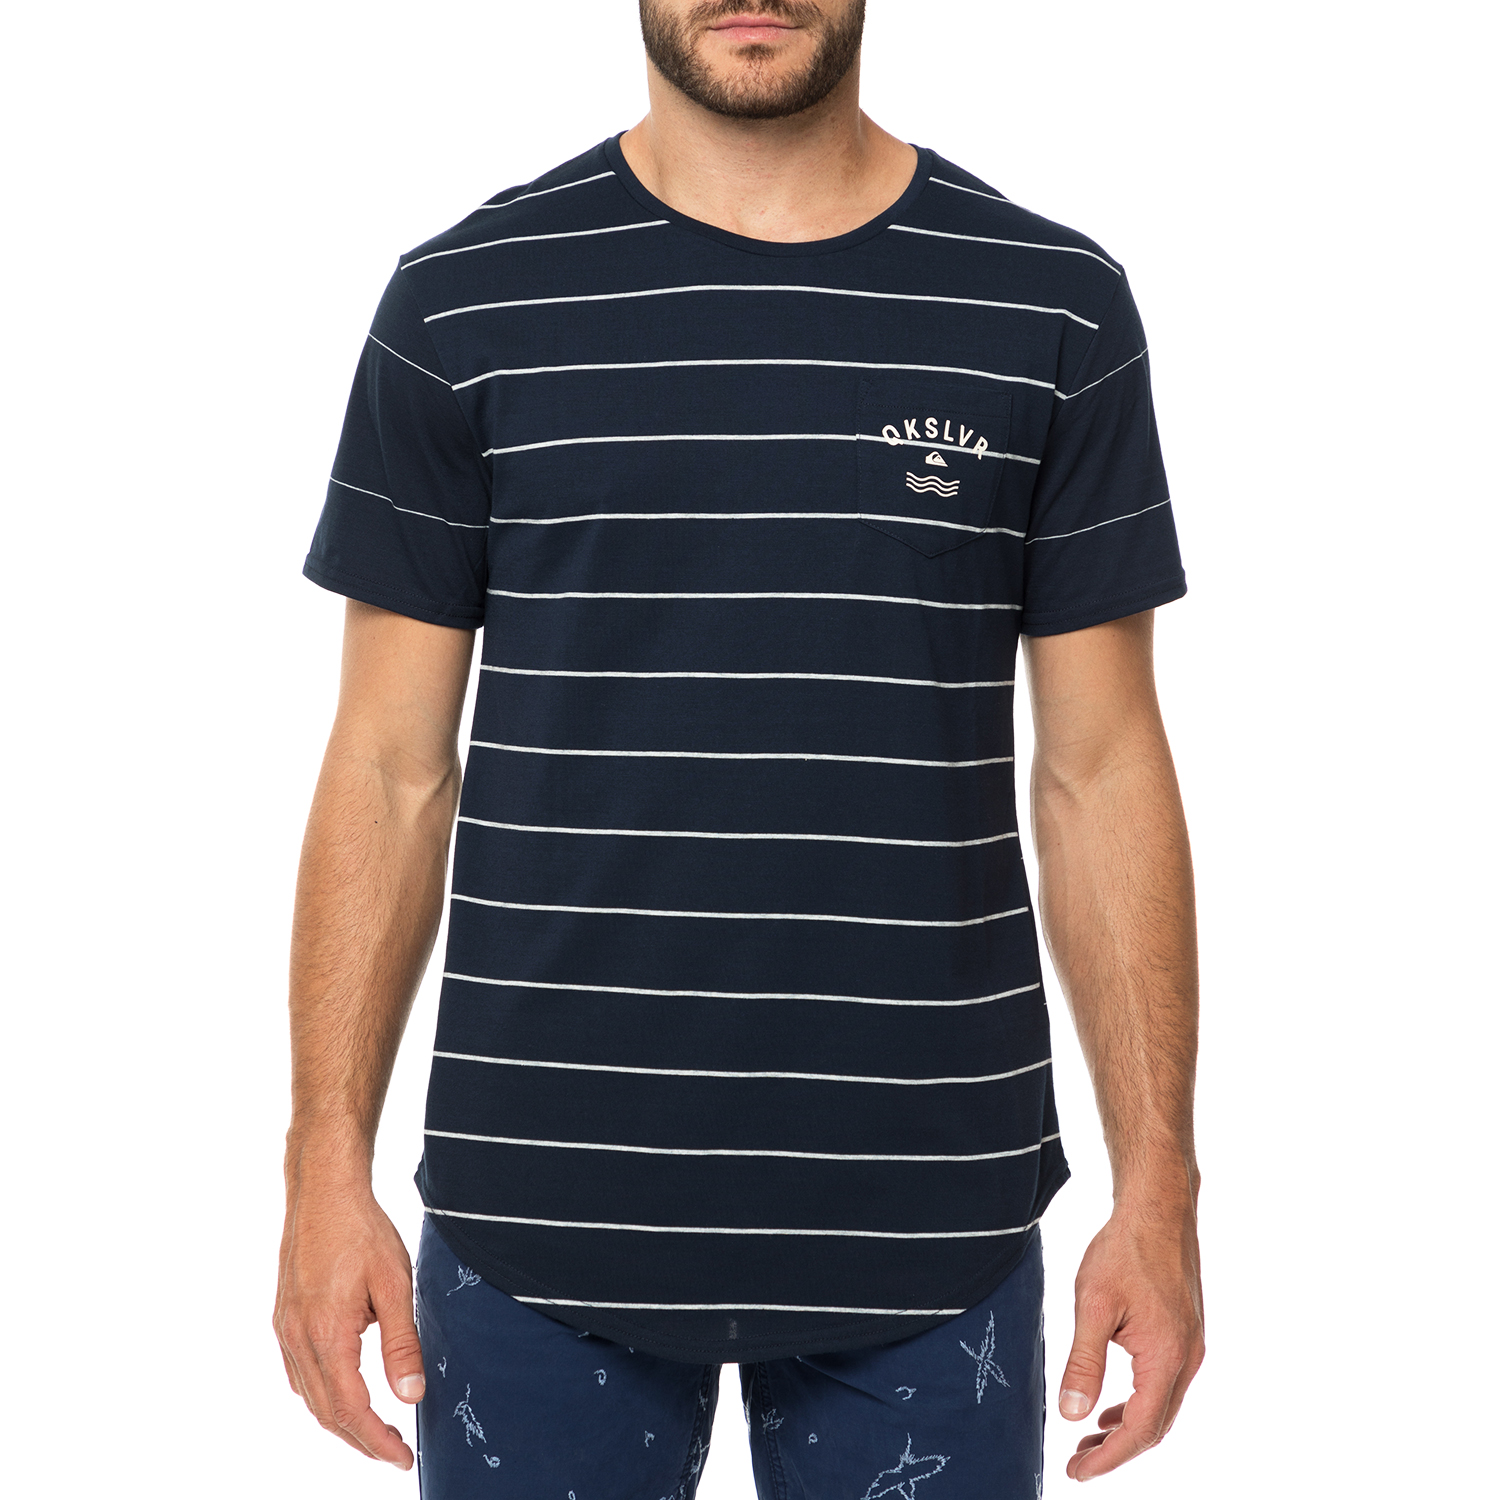 Ανδρικά/Ρούχα/Μπλούζες/Κοντομάνικες QUIKSILVER - Ανδρική κοντομάνικη μπλούζα QUIKSILVER CAPERROCKS μπλε με ρίγες